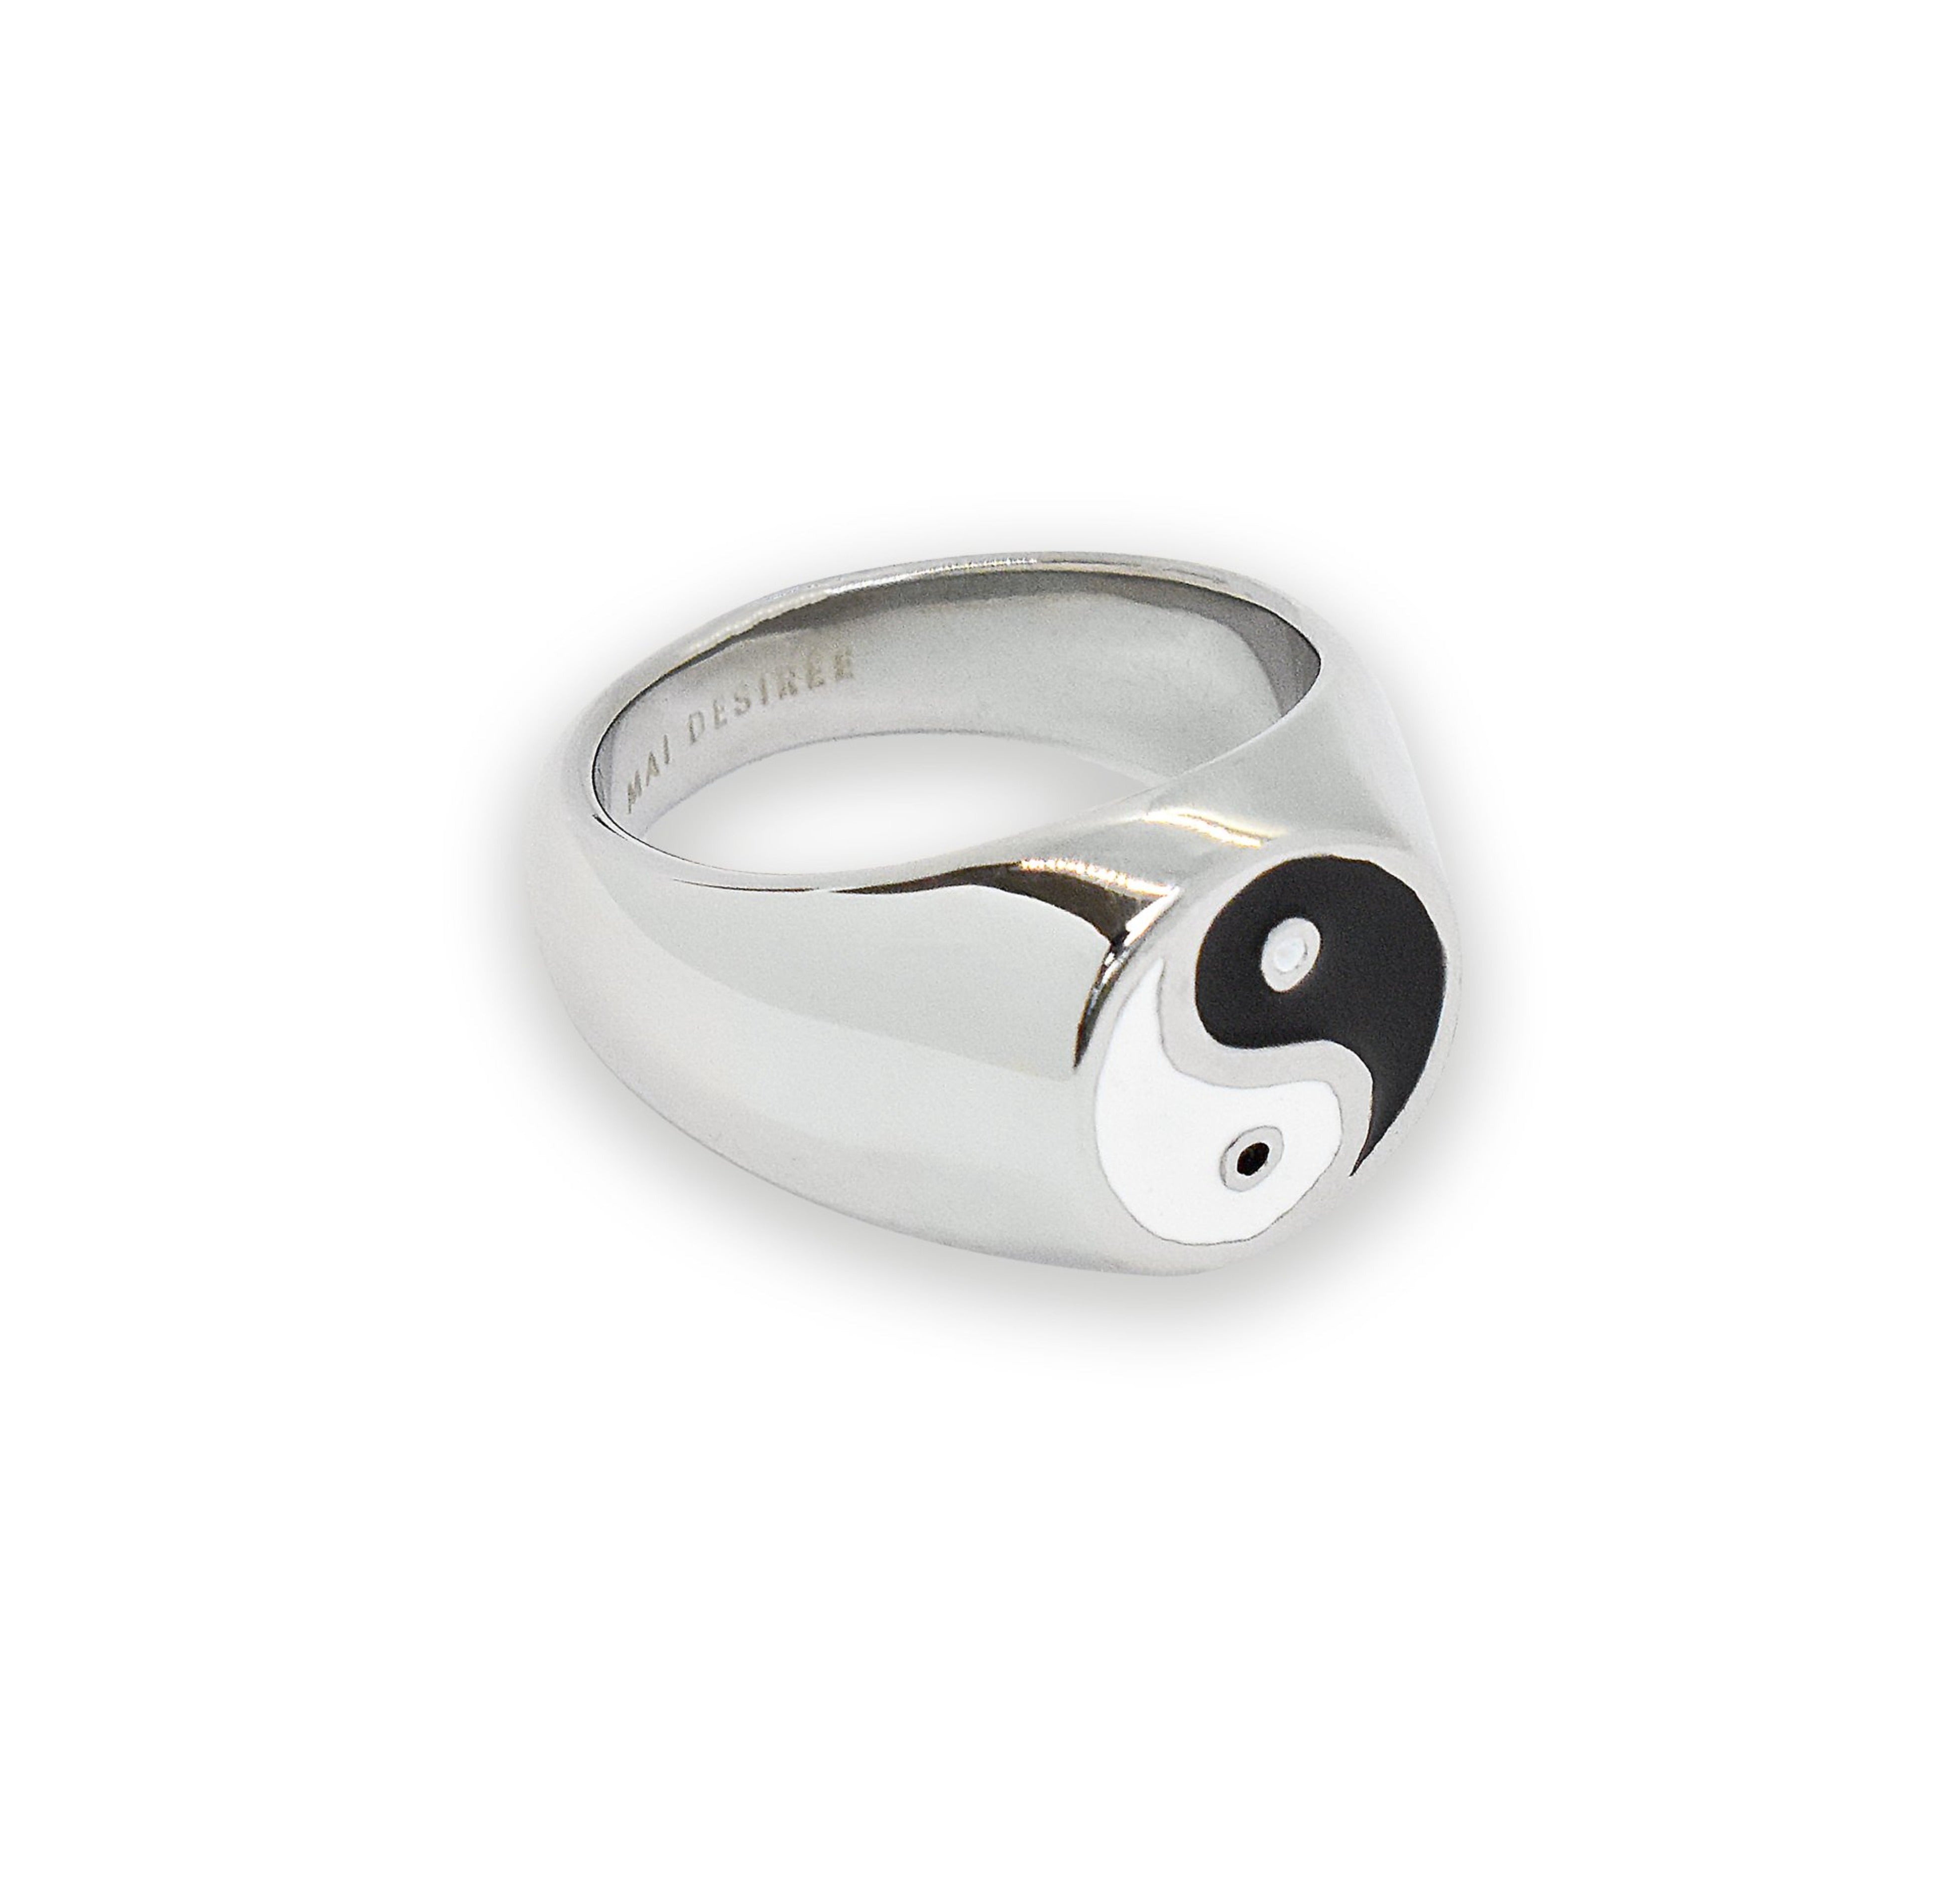 yin yang ring waterproof